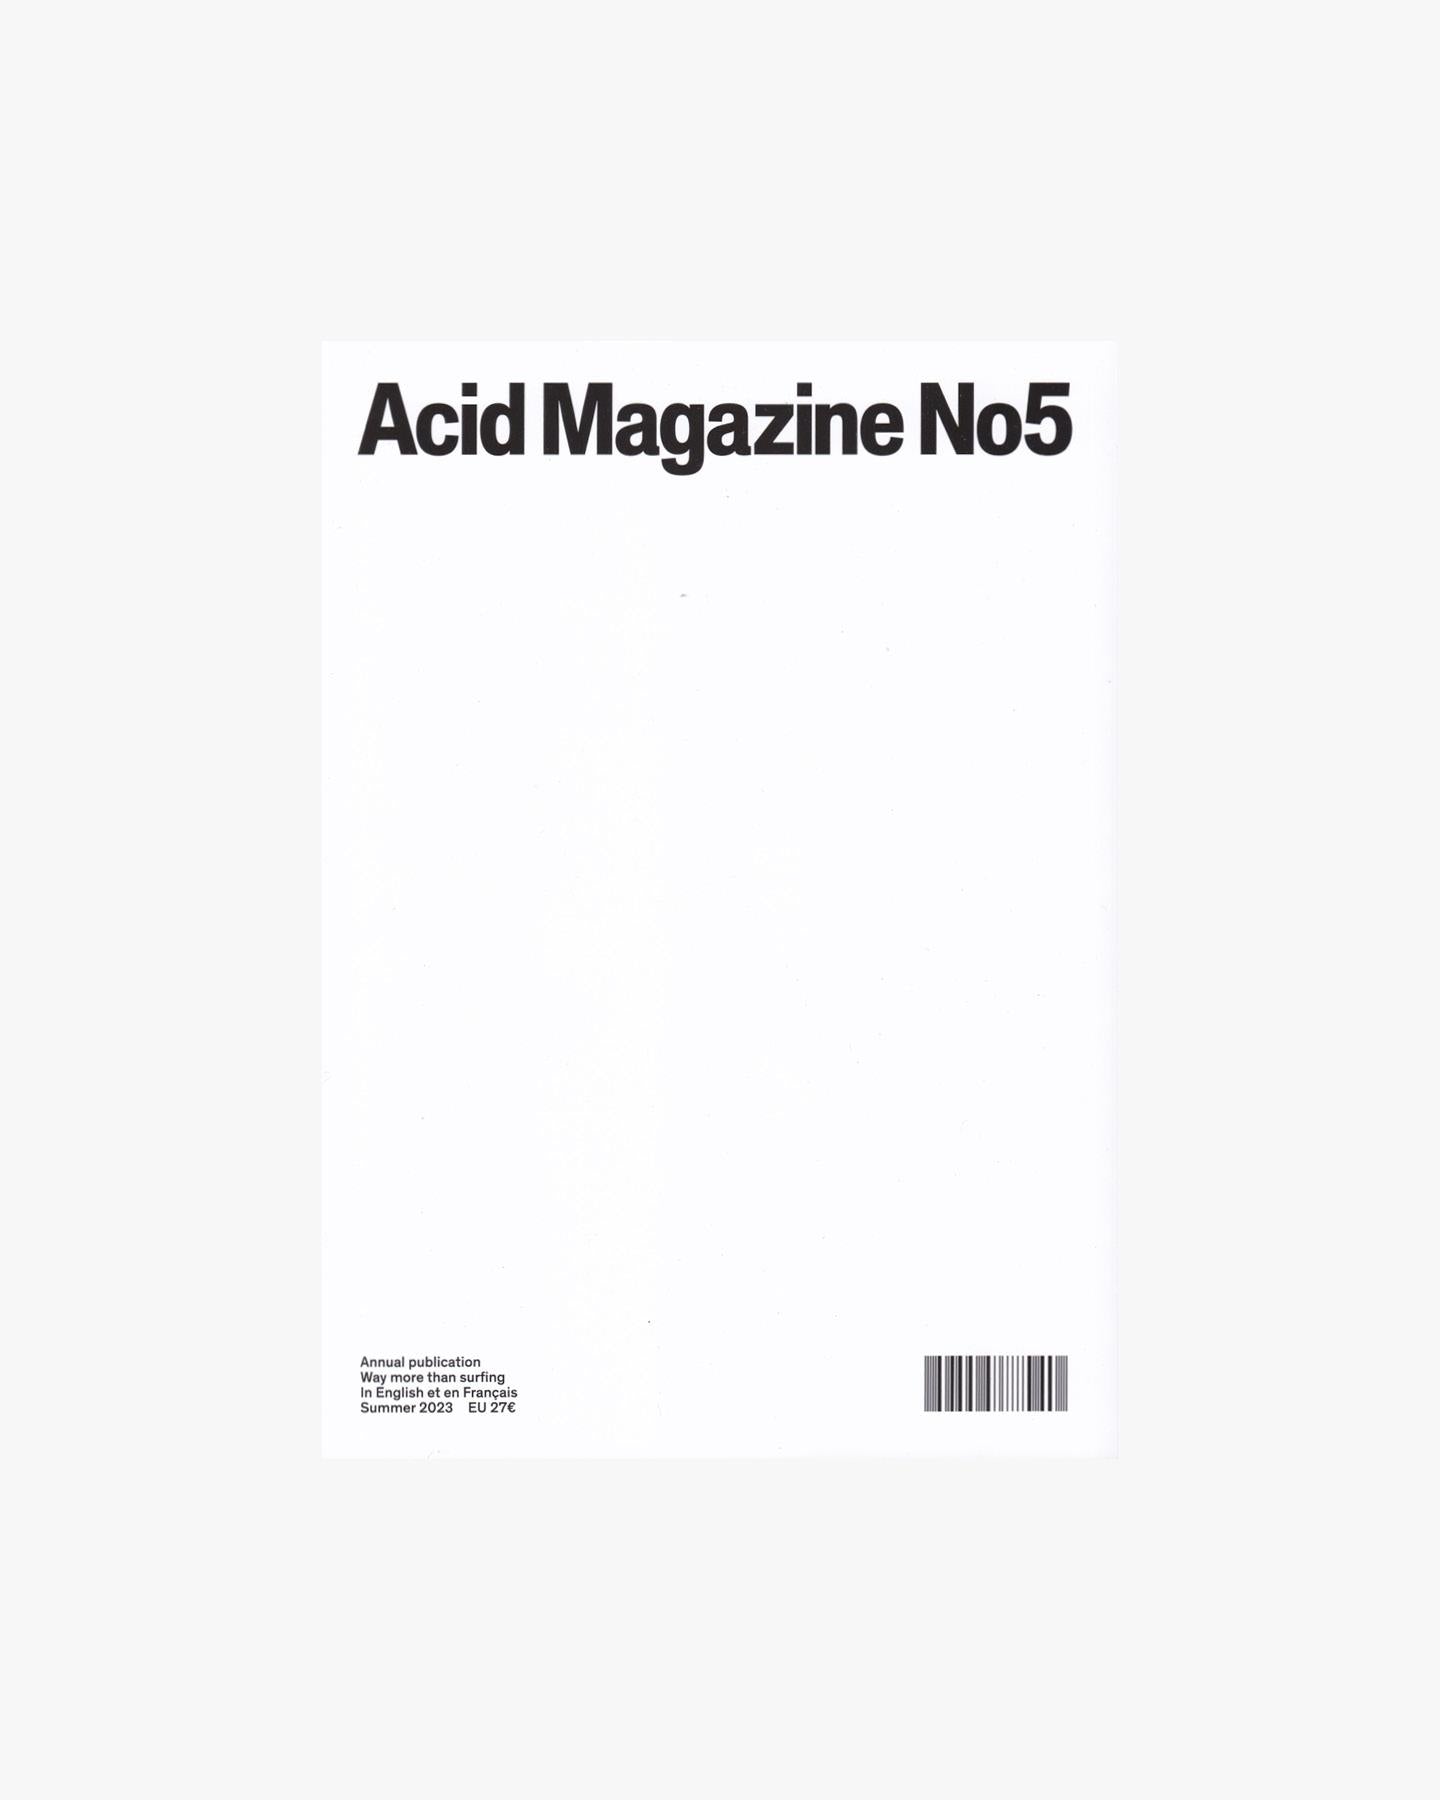 ACID MAGAZINE - Issue #5